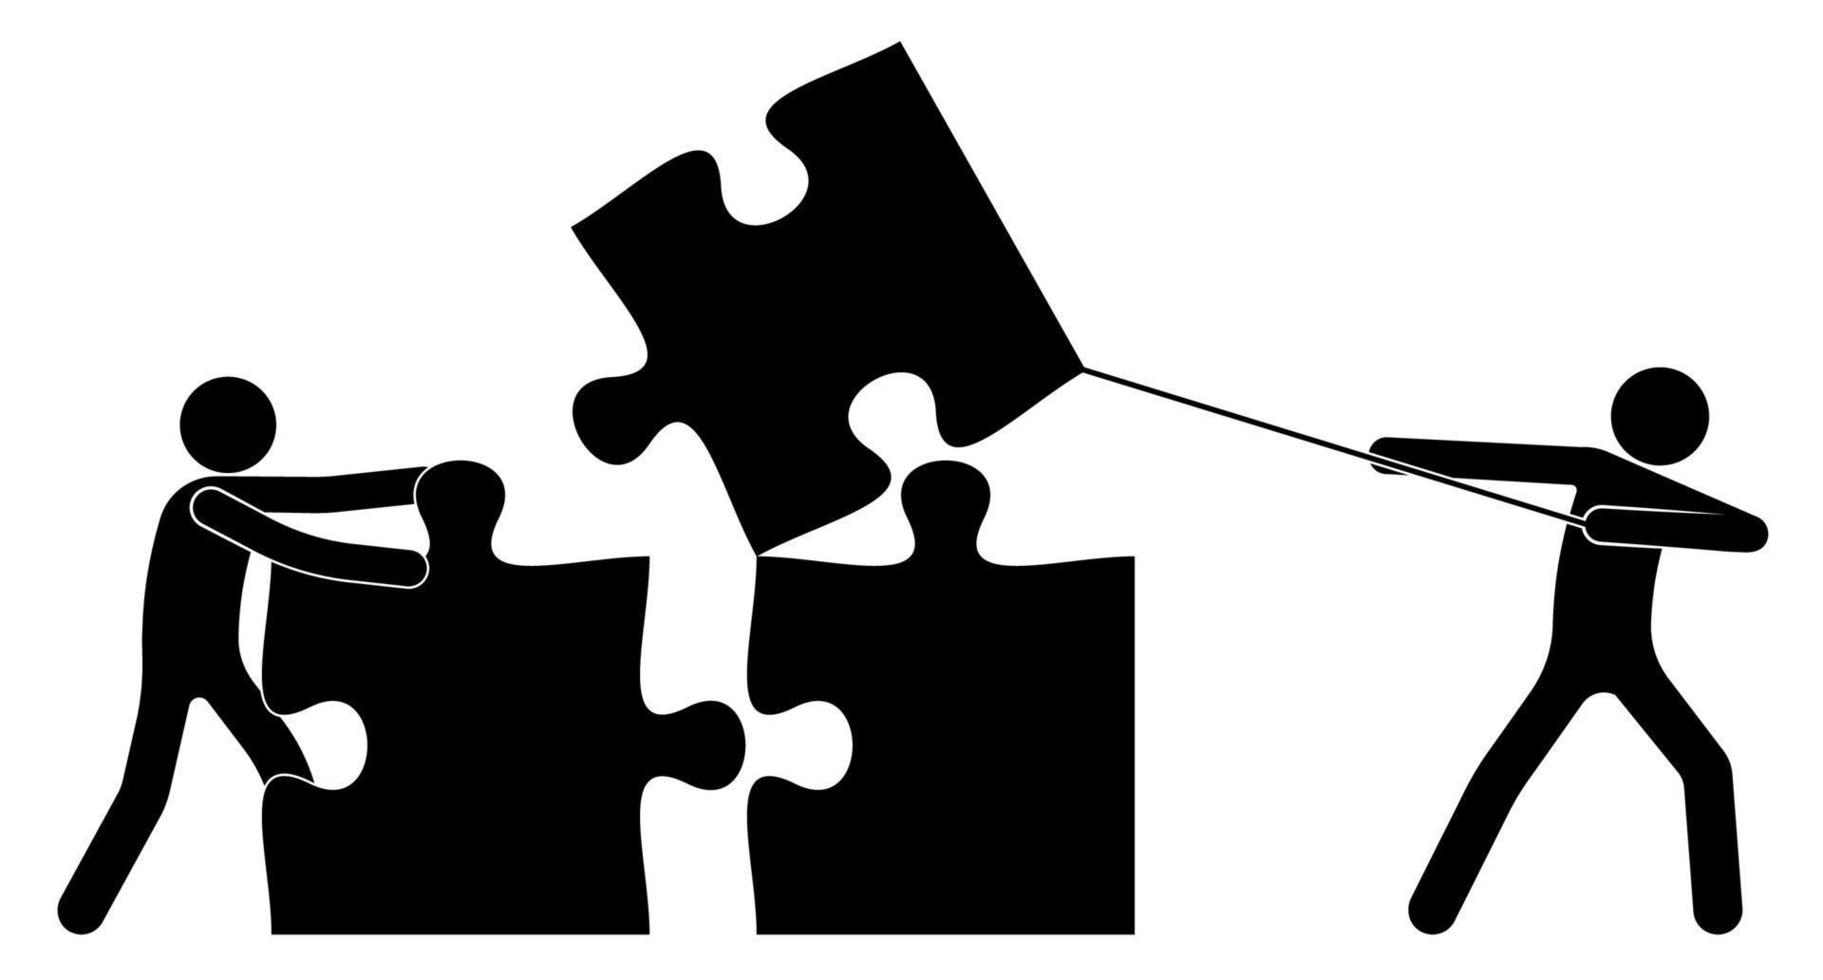 travail en équipe. deux personnes, figurine en bâton construite avec des pièces de puzzle. résoudre un problème commun par des efforts conjoints. travail de personnes en équipe pour un résultat commun. vecteur